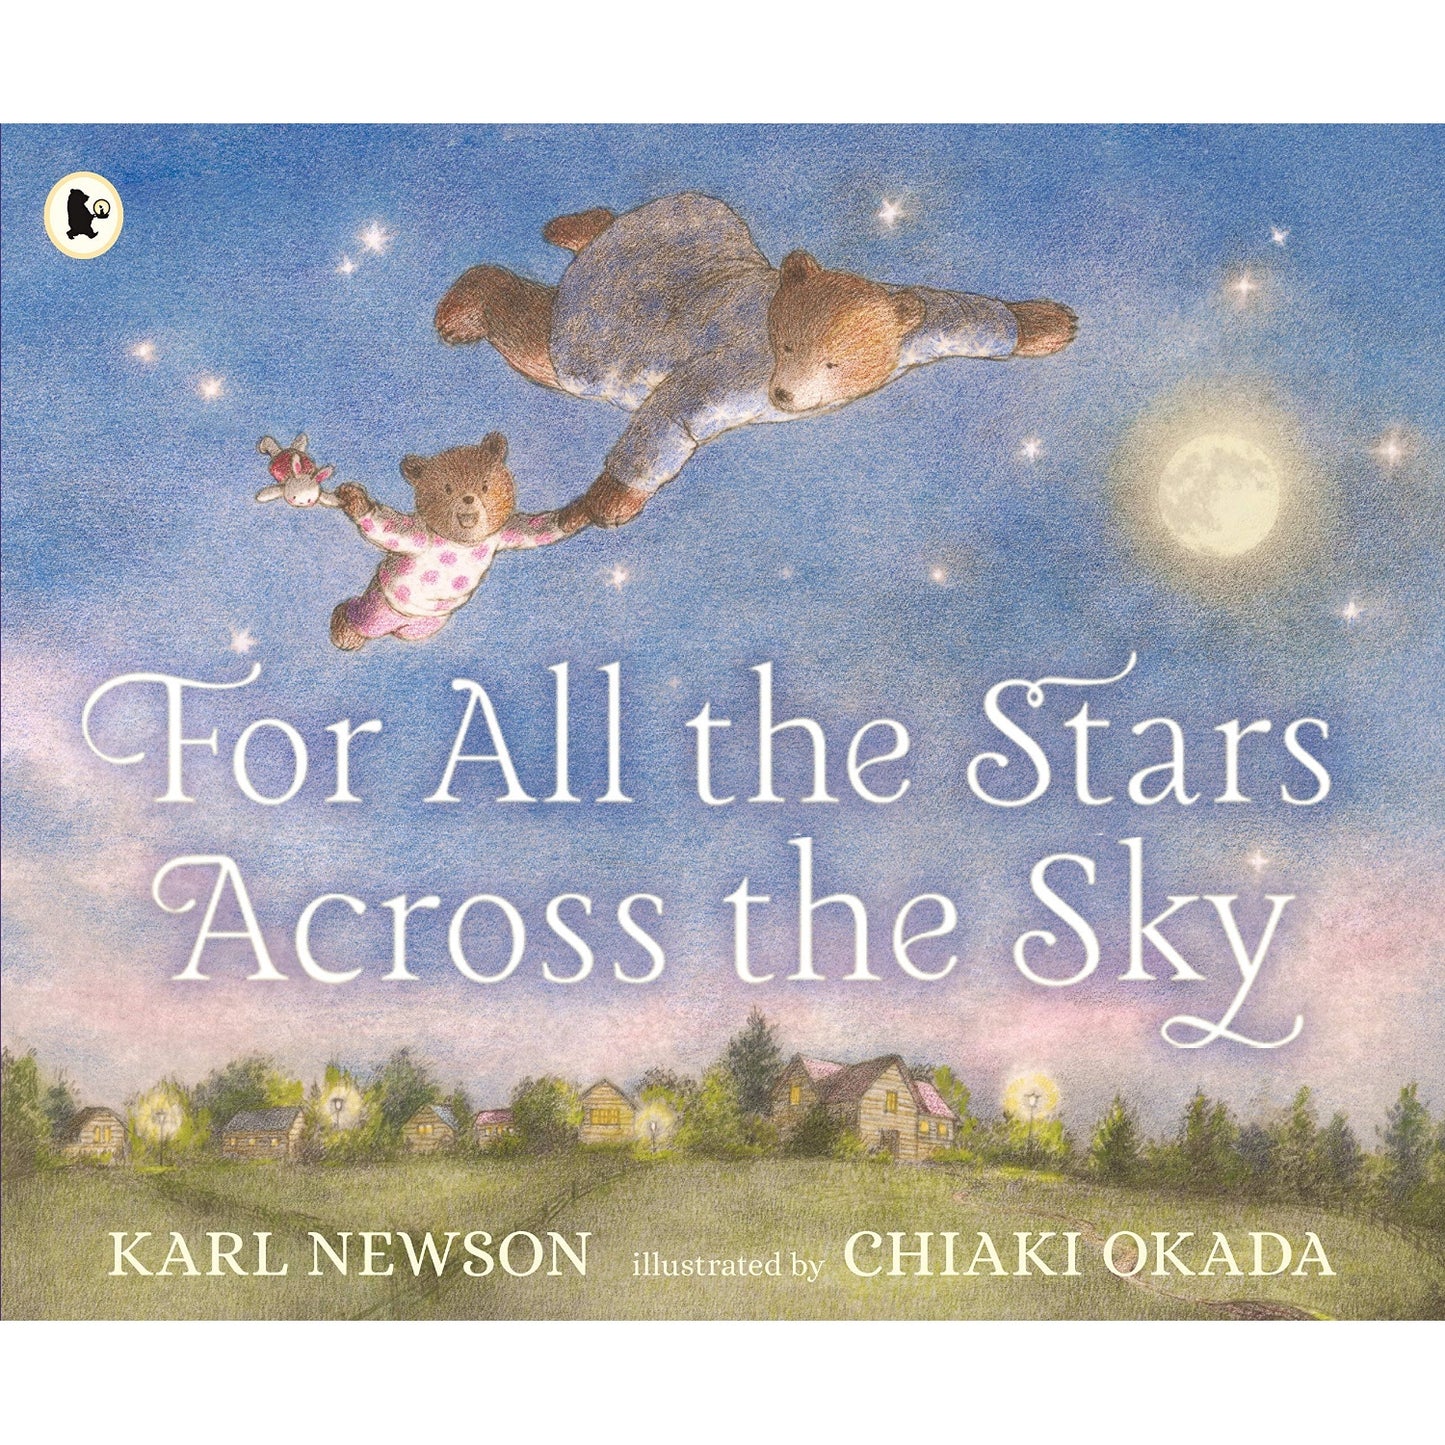 For All the Stars Across the Sky | Children’s Book on Feelings